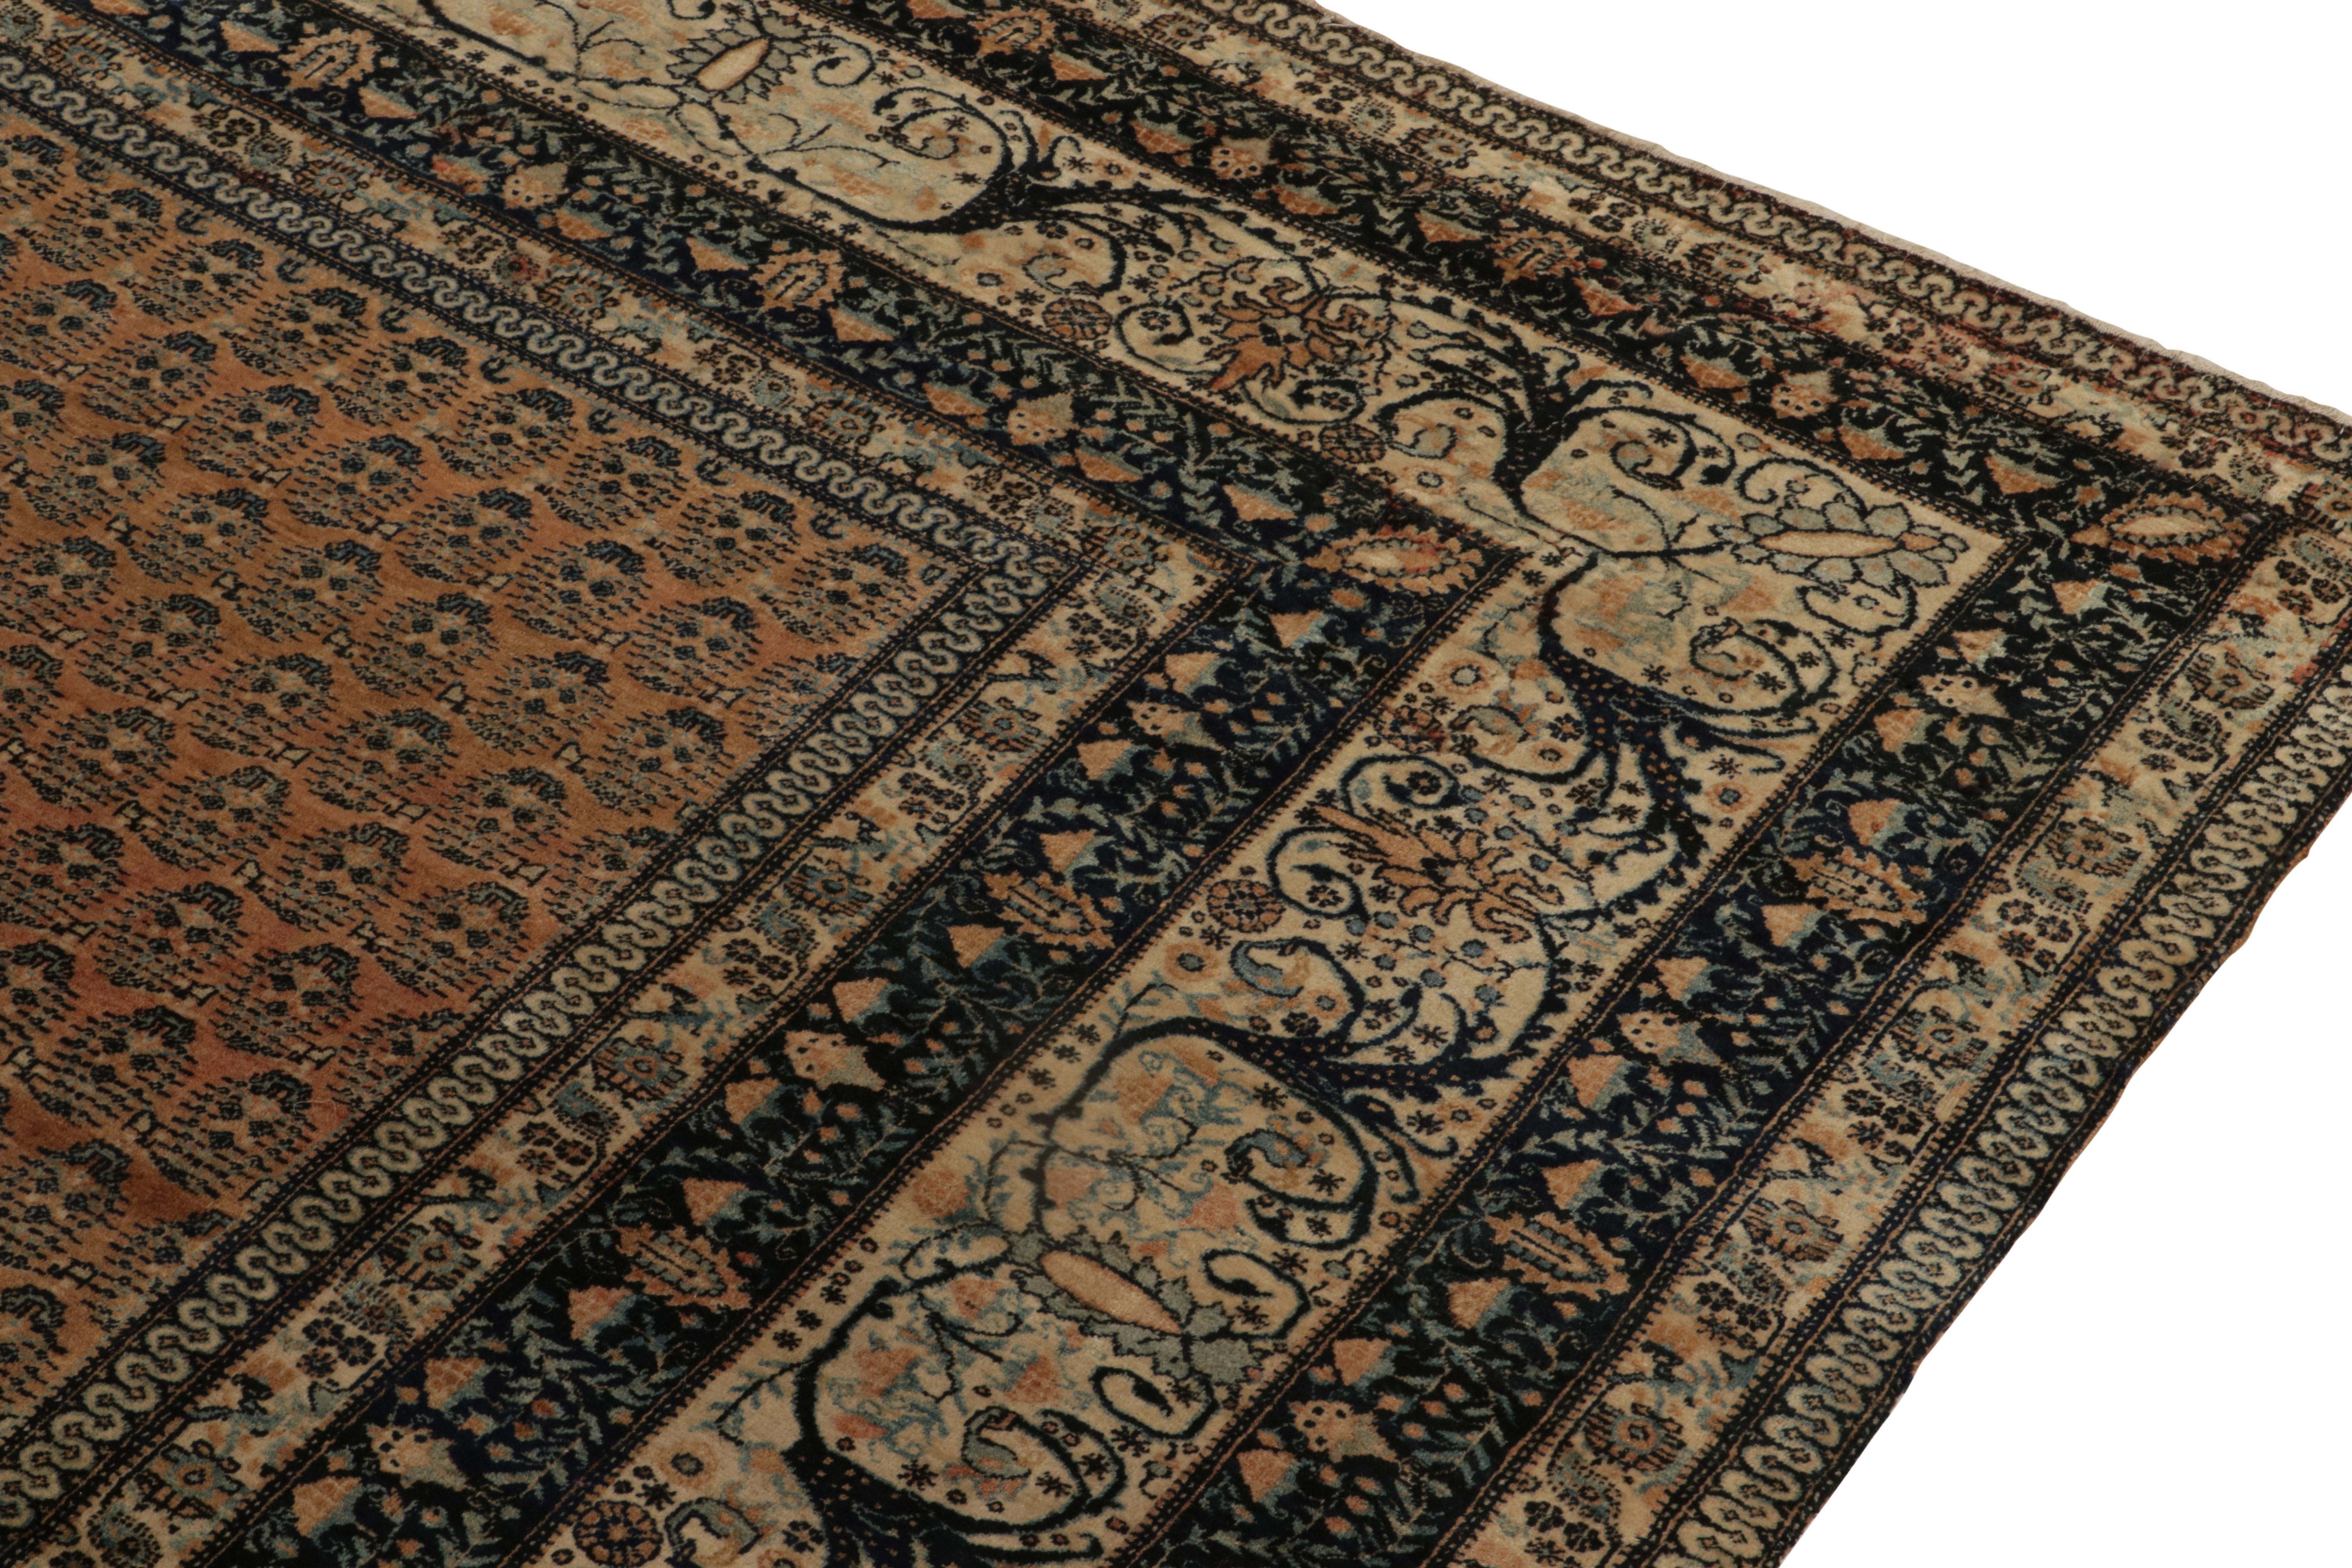 Hand-Knotted Antique Tabriz rug in Beige-Brown, Black & Blue Floral Border by Rug & Kilim For Sale